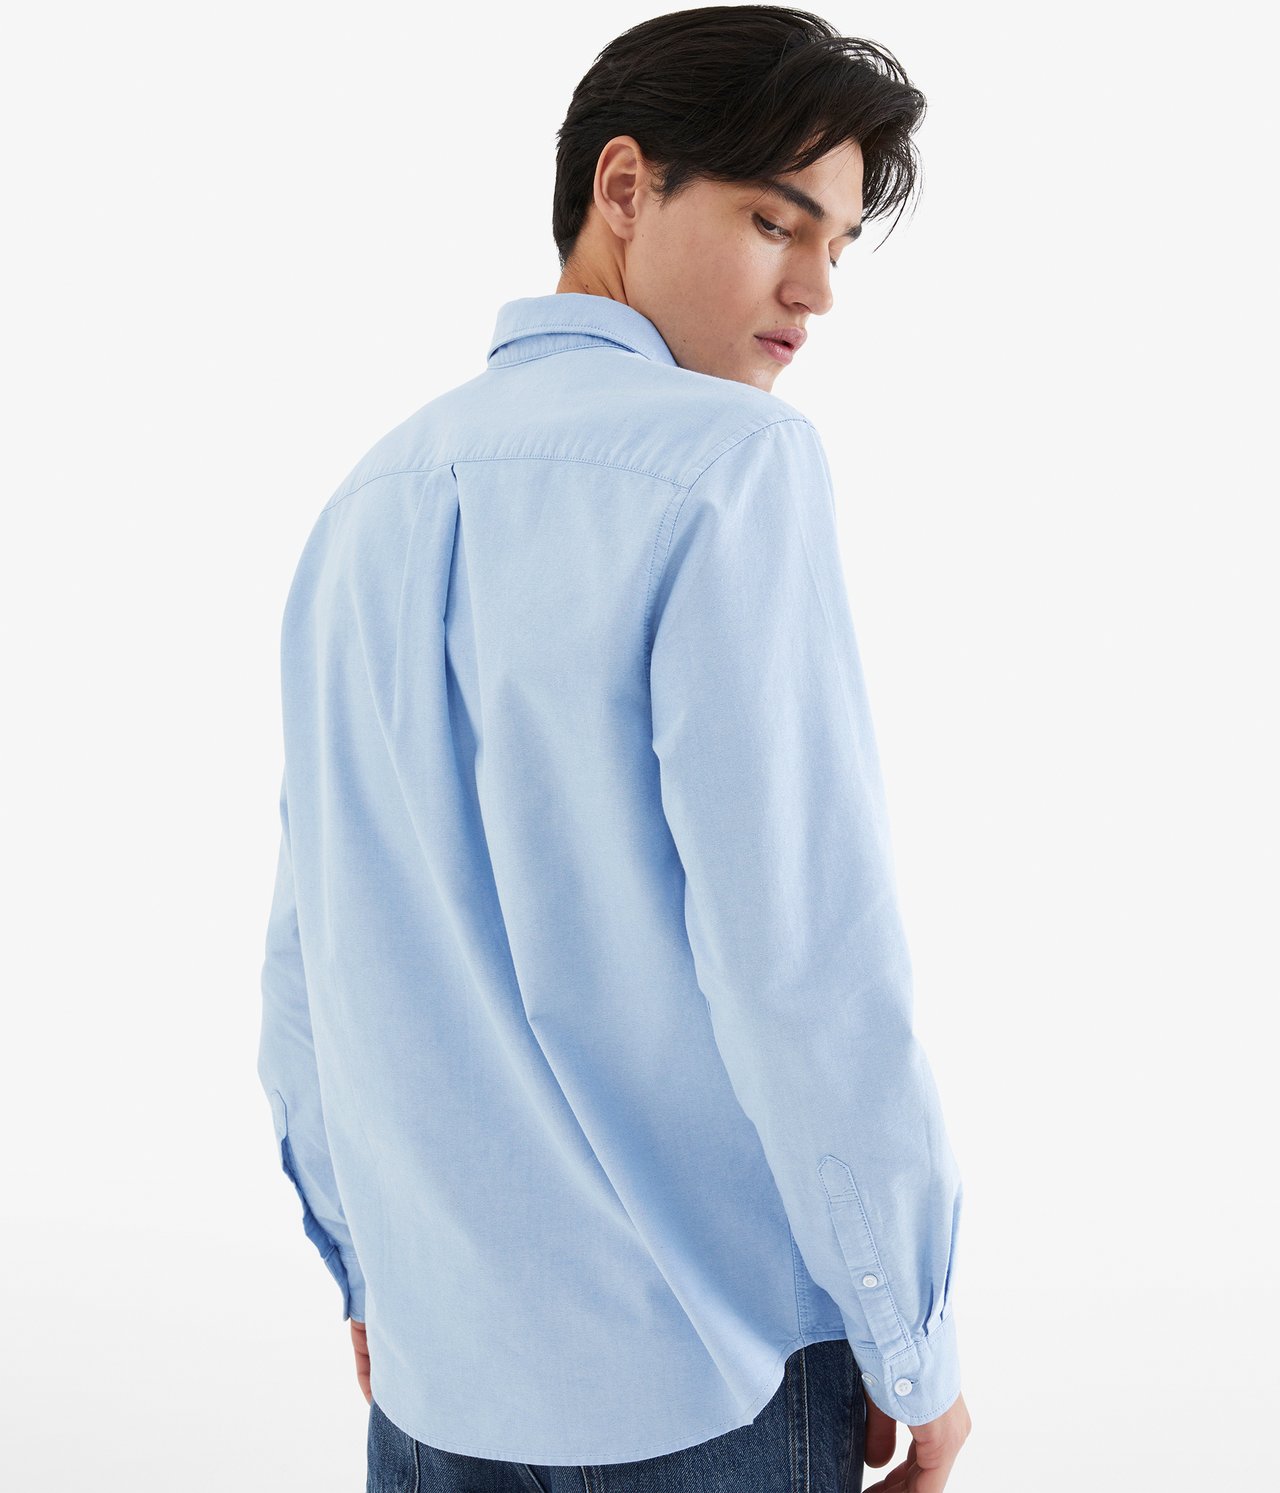 Oxfordskjorta regular fit - Ljusblå - 189cm / Storlek: M - 4